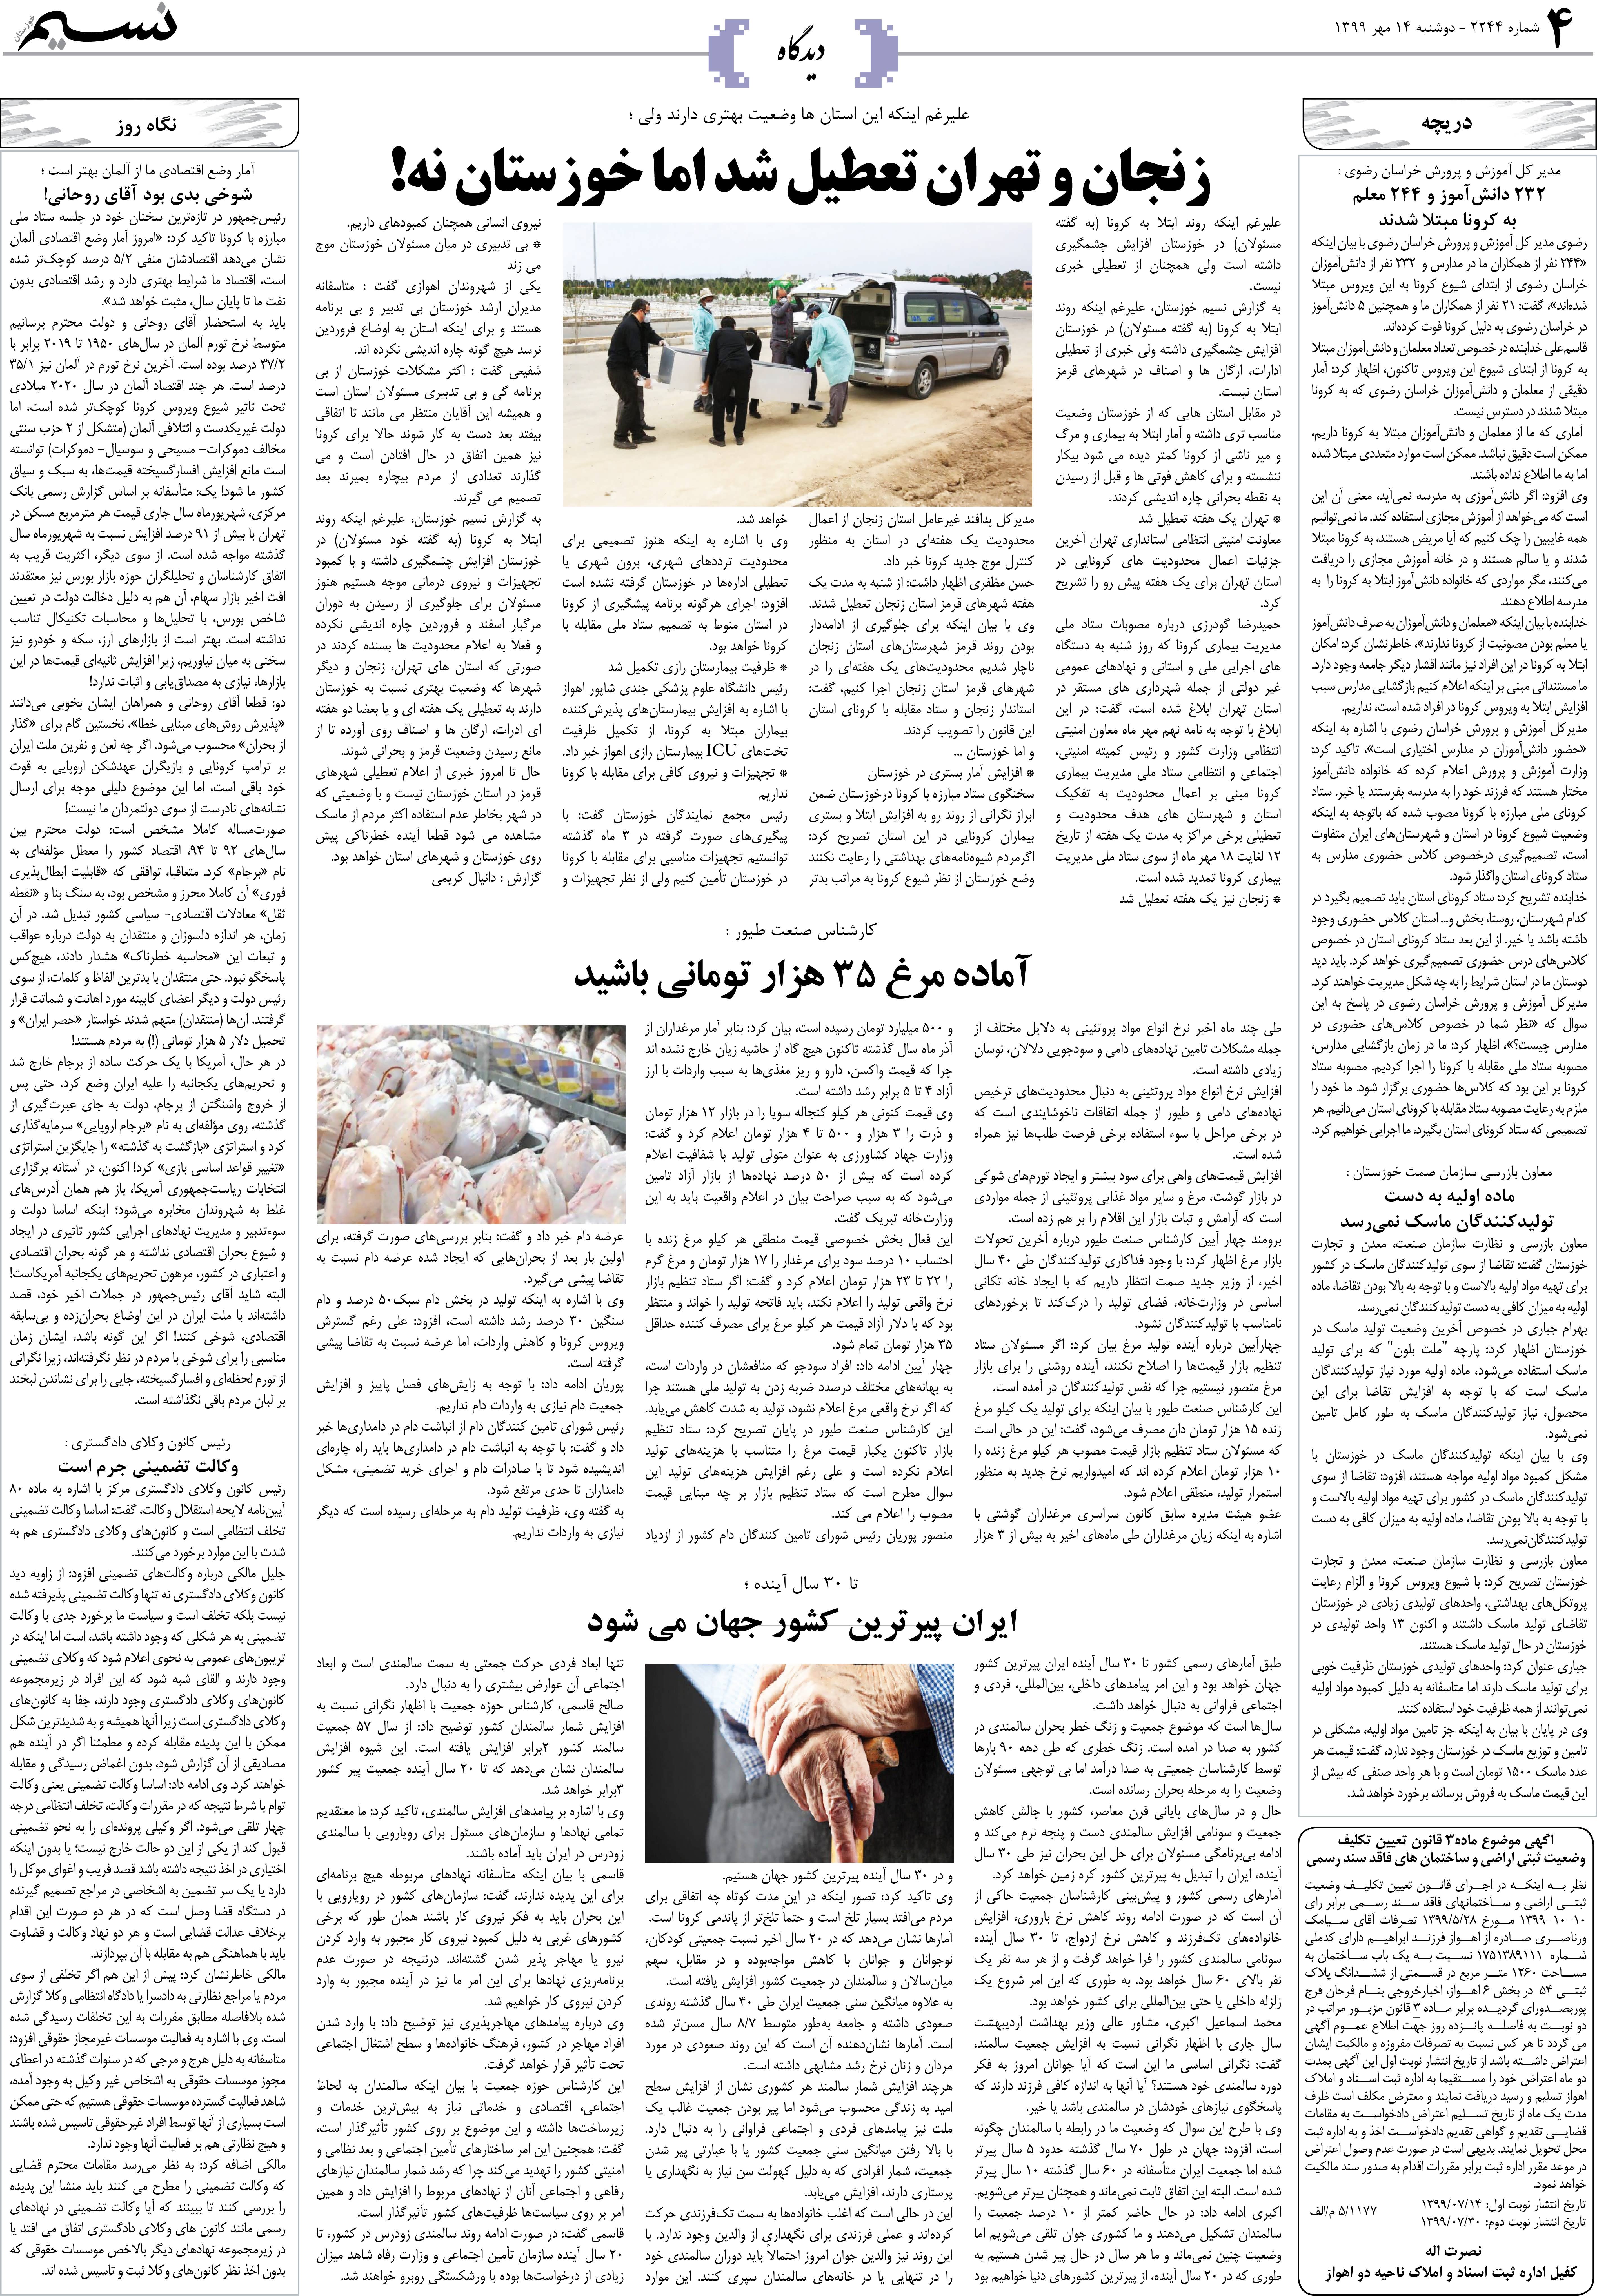 صفحه دیدگاه روزنامه نسیم شماره 2244